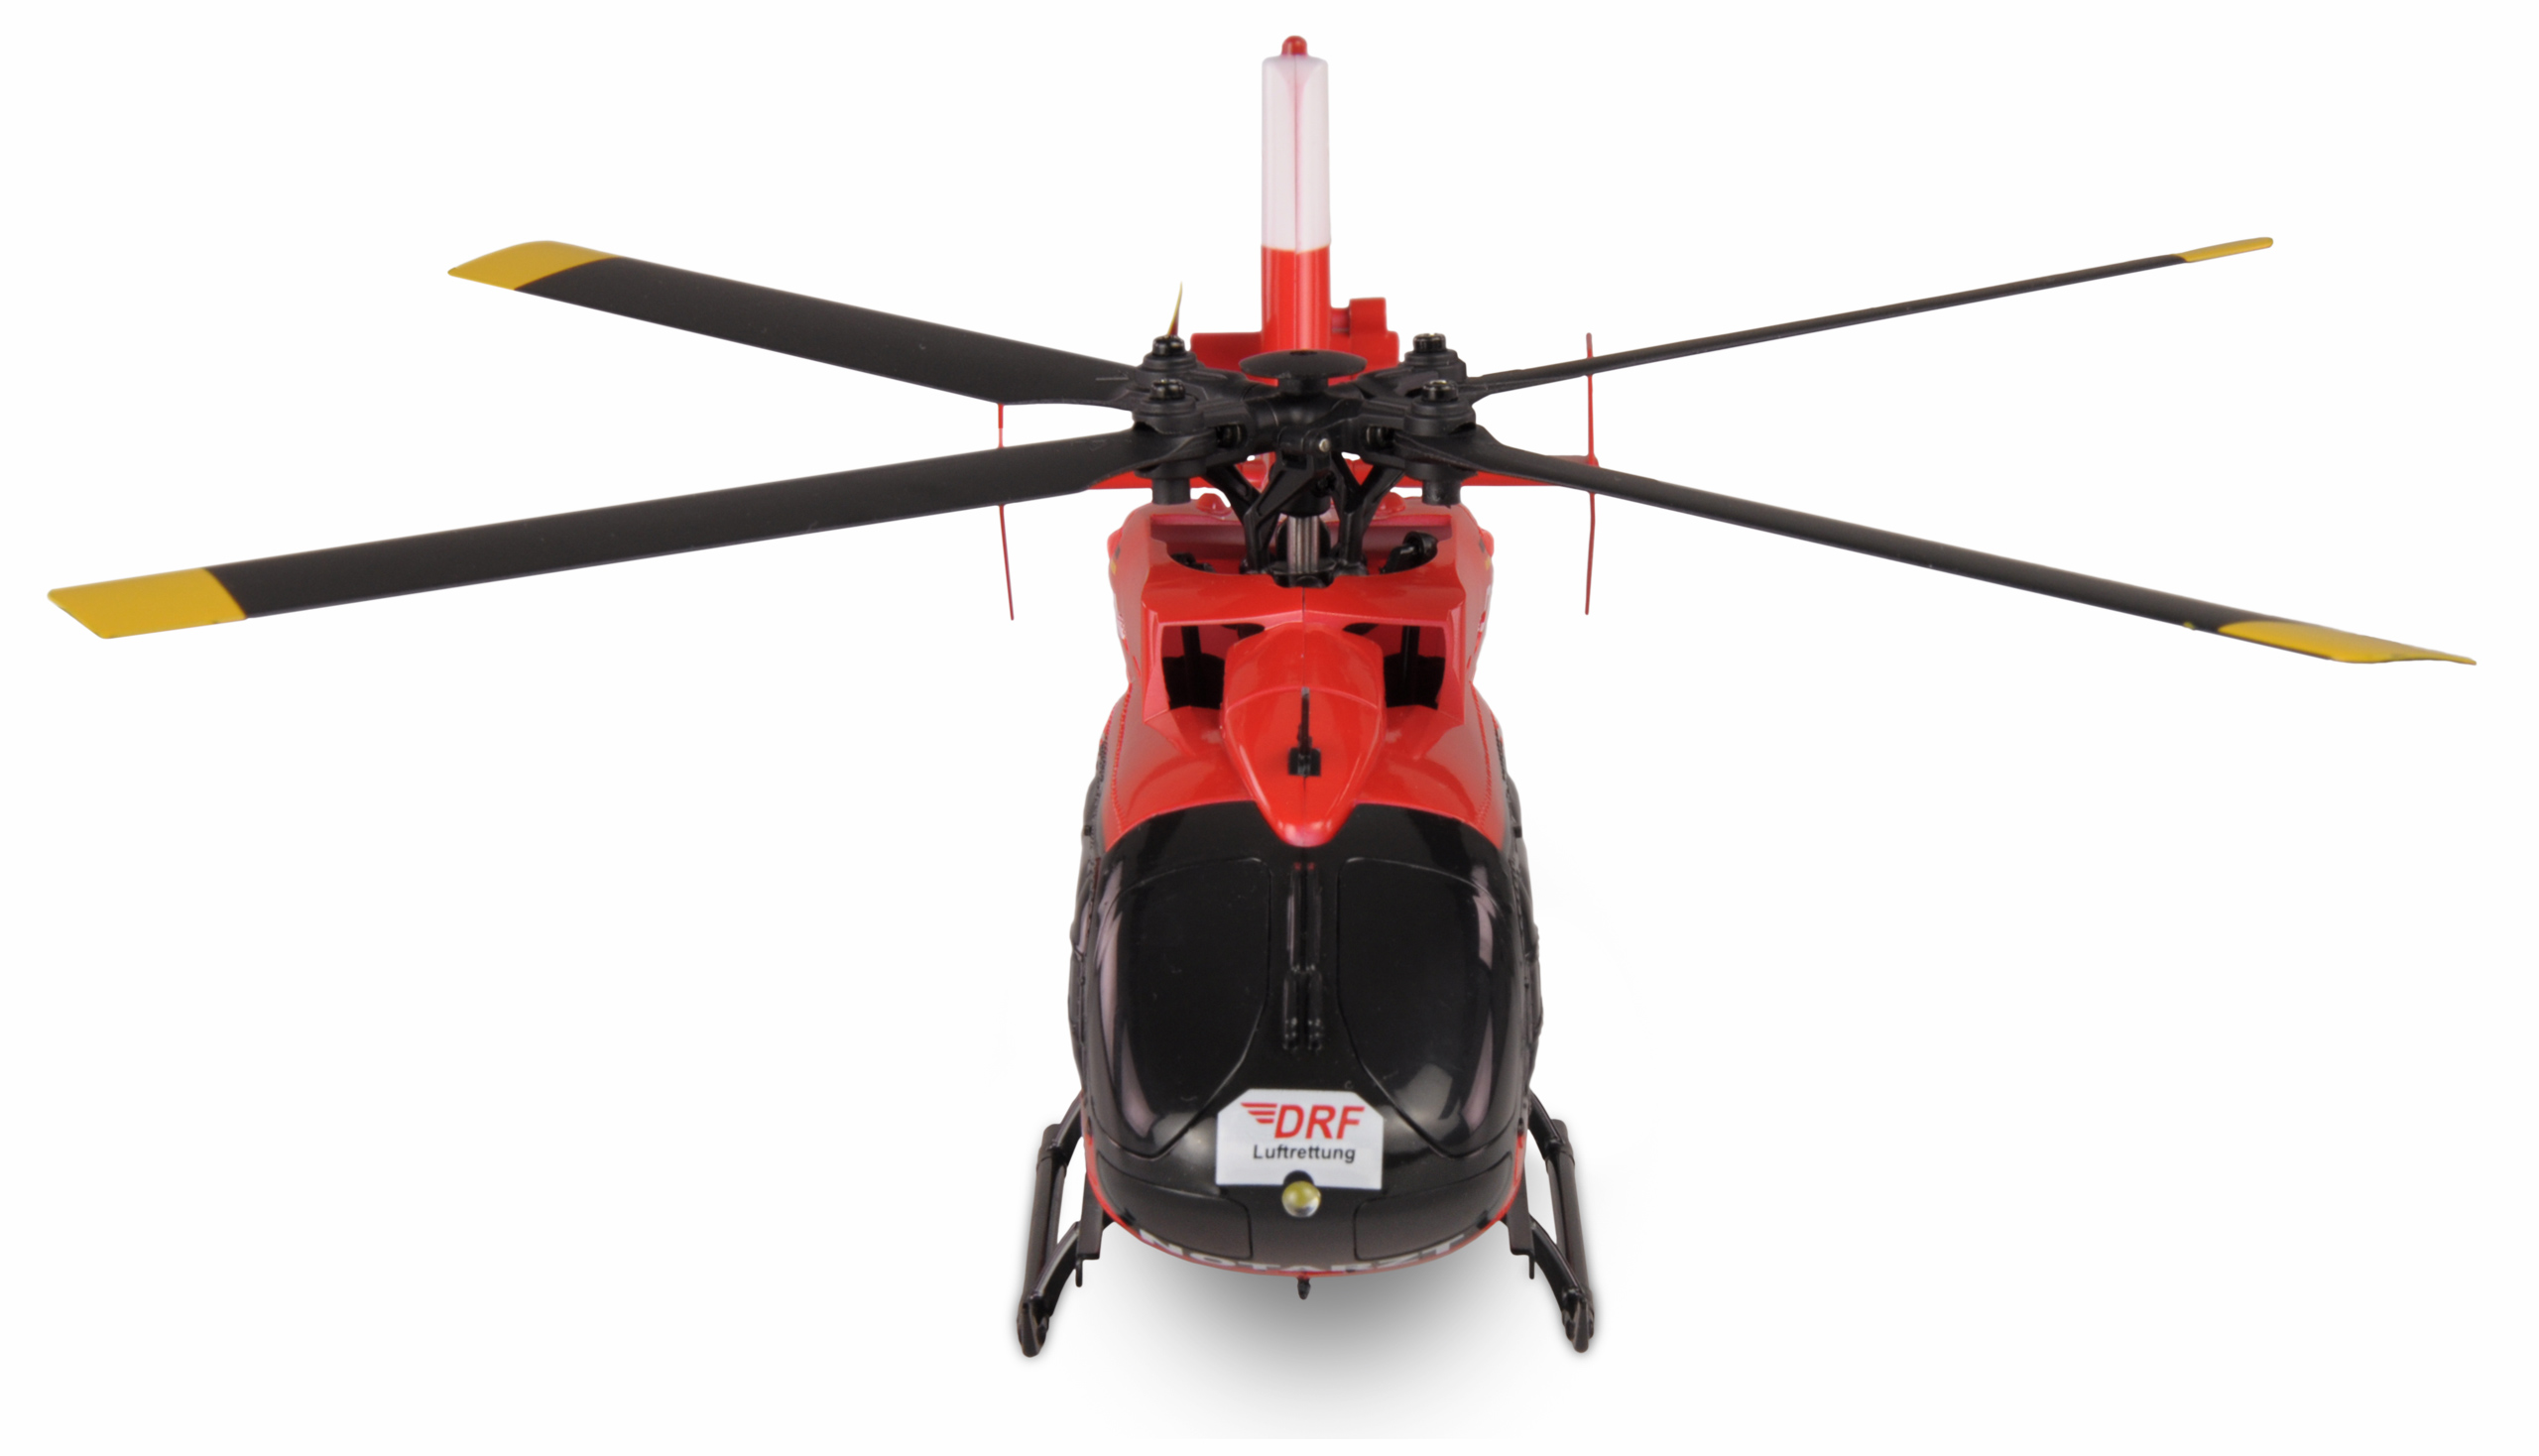 Amewi - Hélicoptère Télécommandé AFX-105 4 Ch 6G 2.4 Ghz RTF